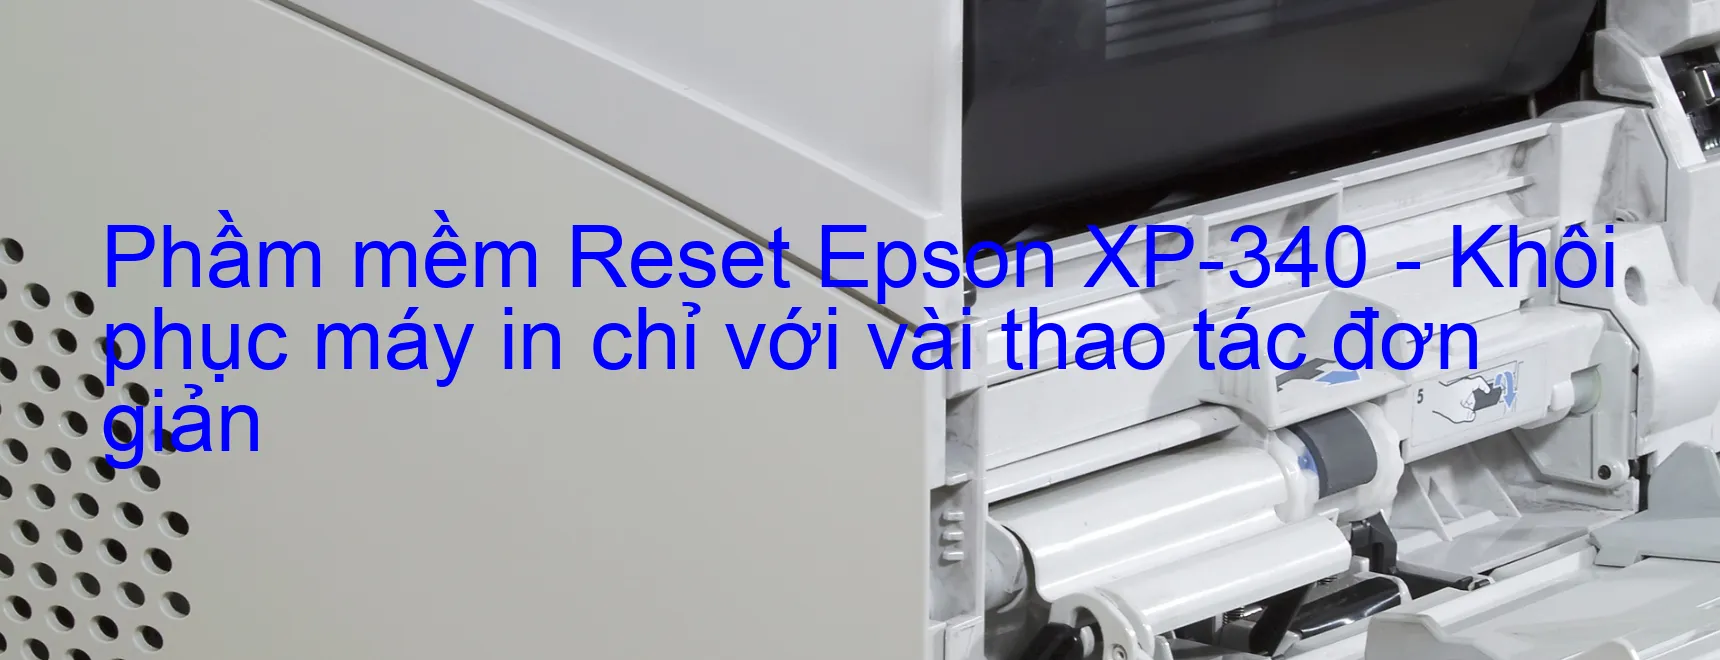 Phầm mềm Reset Epson XP-340 - Khôi phục máy in chỉ với vài thao tác đơn giản